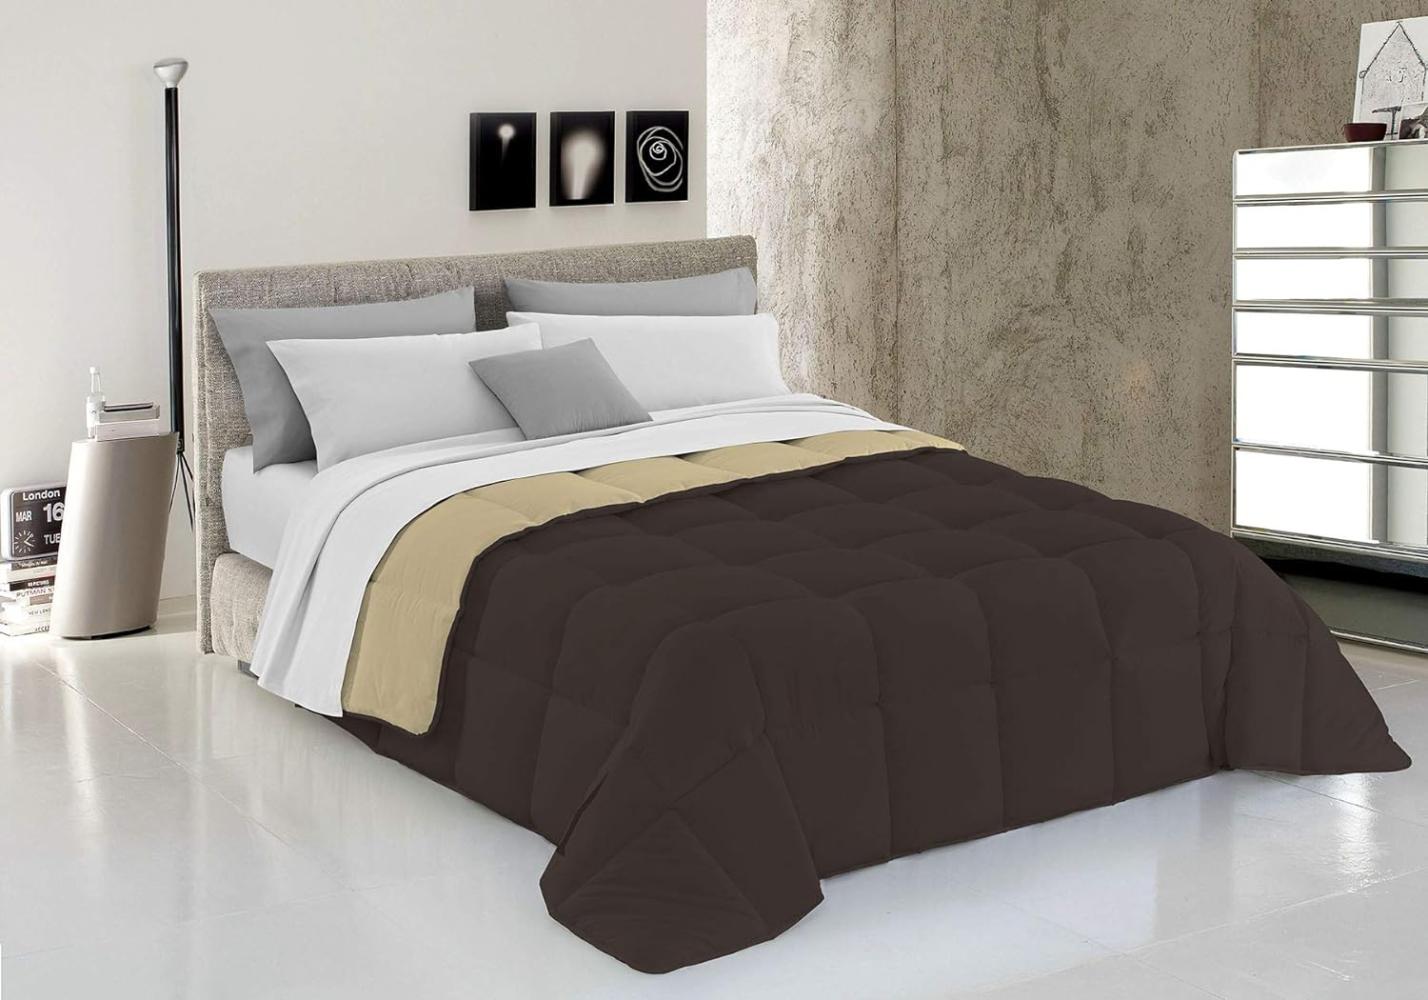 Italian Bed Linen Wintersteppdecke Elegant, Braun/Creme, Doppelte, 100% Mikrofaser, 260x260cm Bild 1